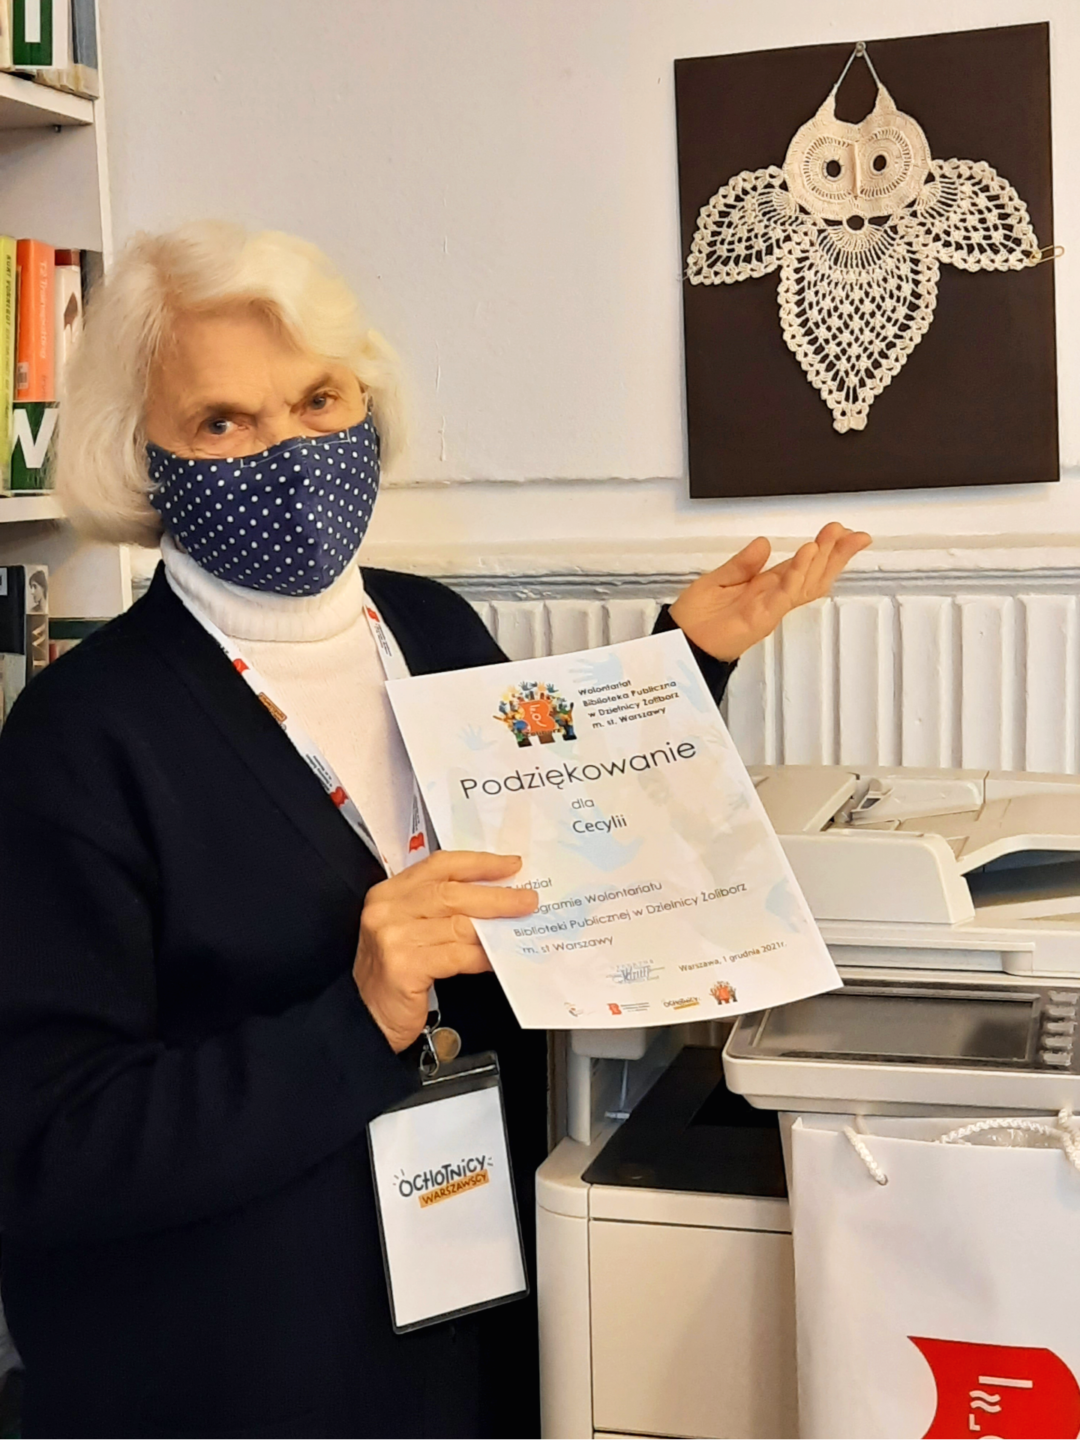 zdjęcie przedstawiające wolontariuszkę roku w czytelni naukowej w bibliotece publicznej w dzielnicy żoliborz m. st. warszawy. na dyplomie napis podziękowanie dla cecylii, na identyfikatorze napis ochotnicy warszawy